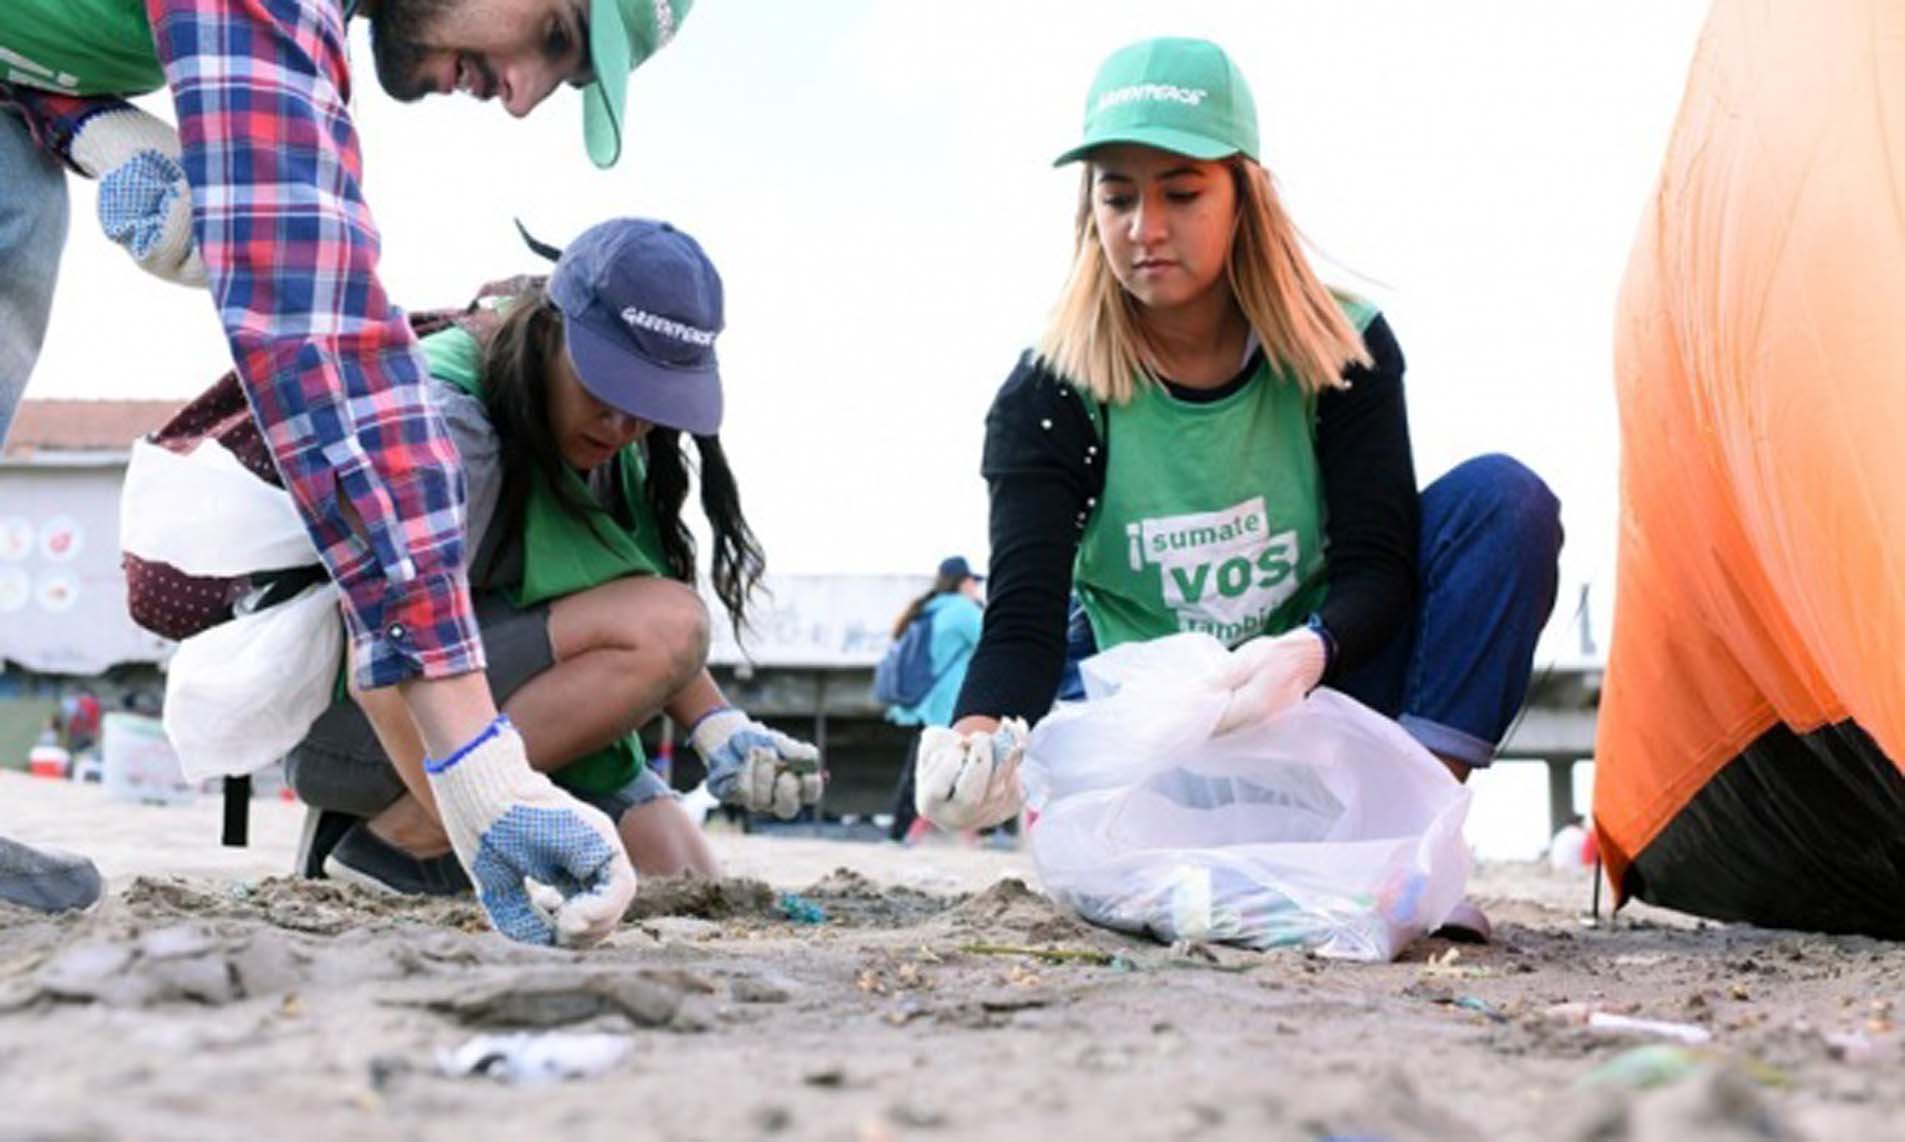 Limpieza de plásticos en Playa Popular de Mar del Plata